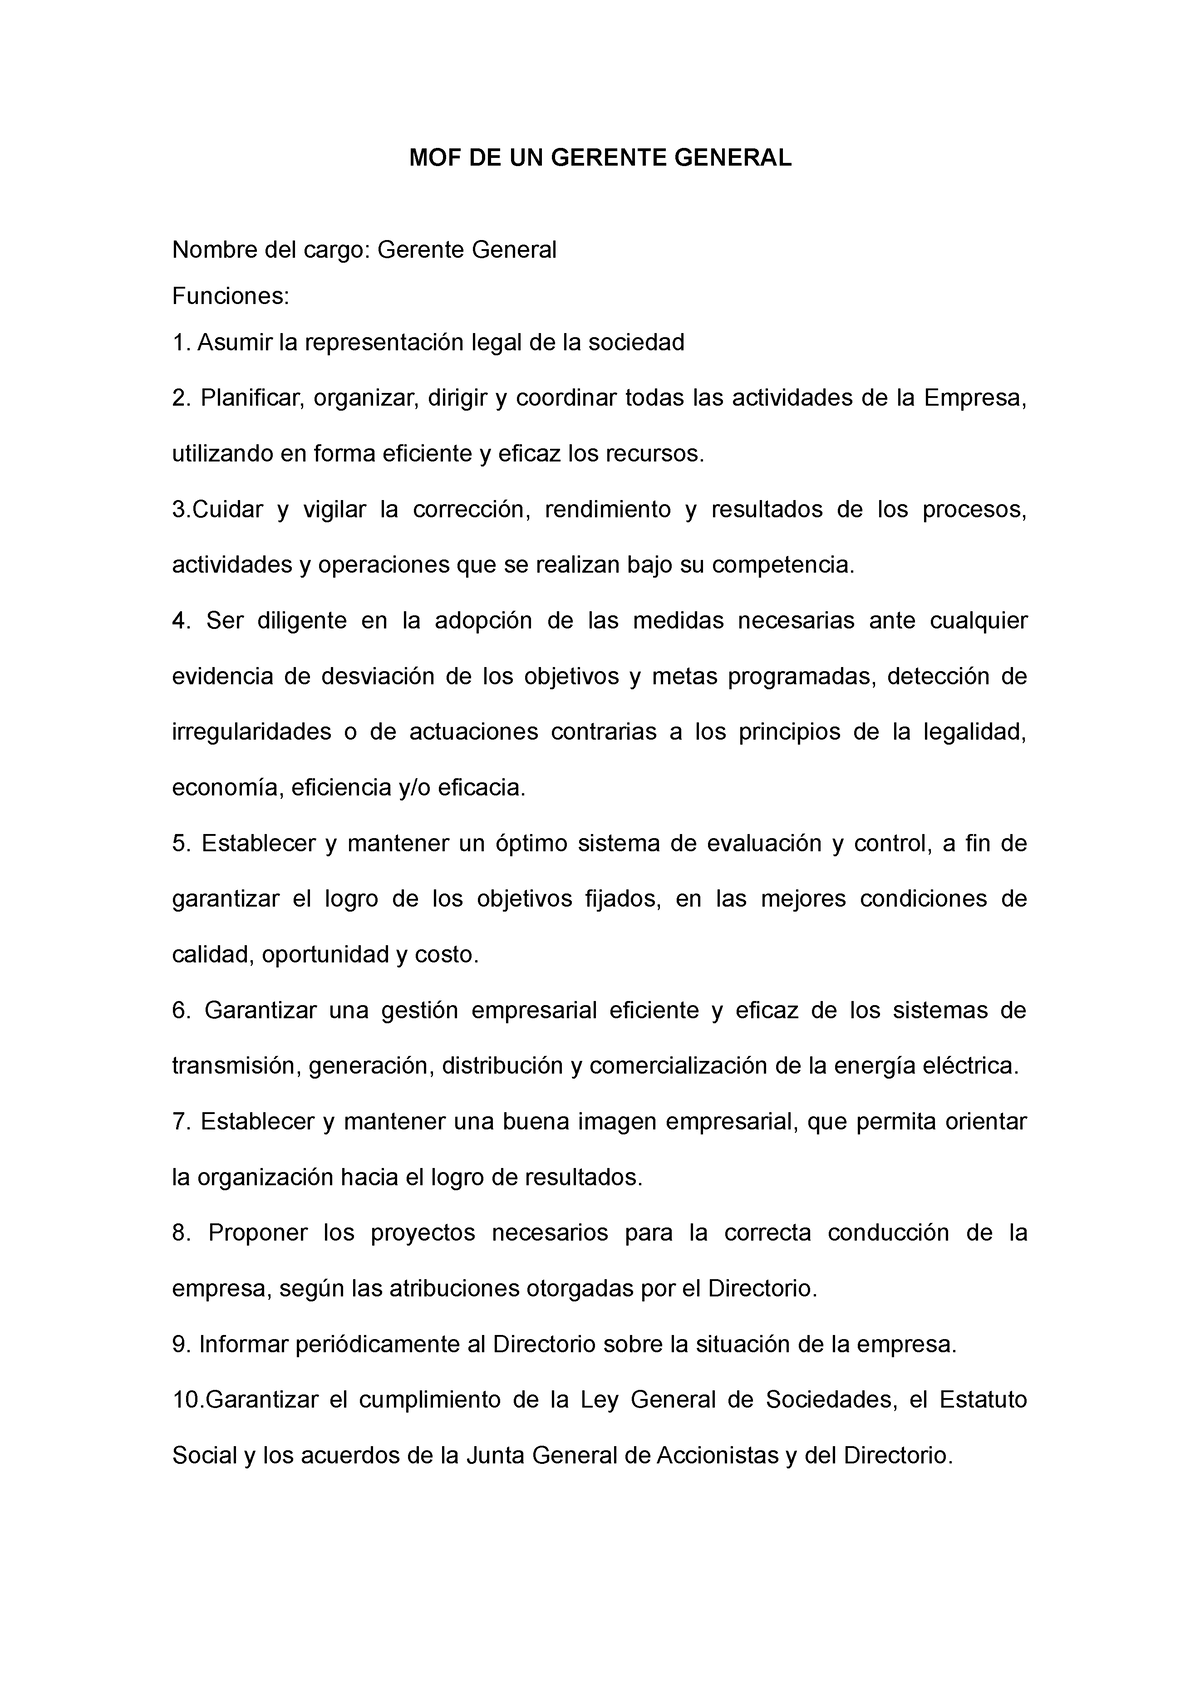 Manual De Organizacion Y Funciones De Un Gerente General Mof De Un Gerente General Nombre Del 1241